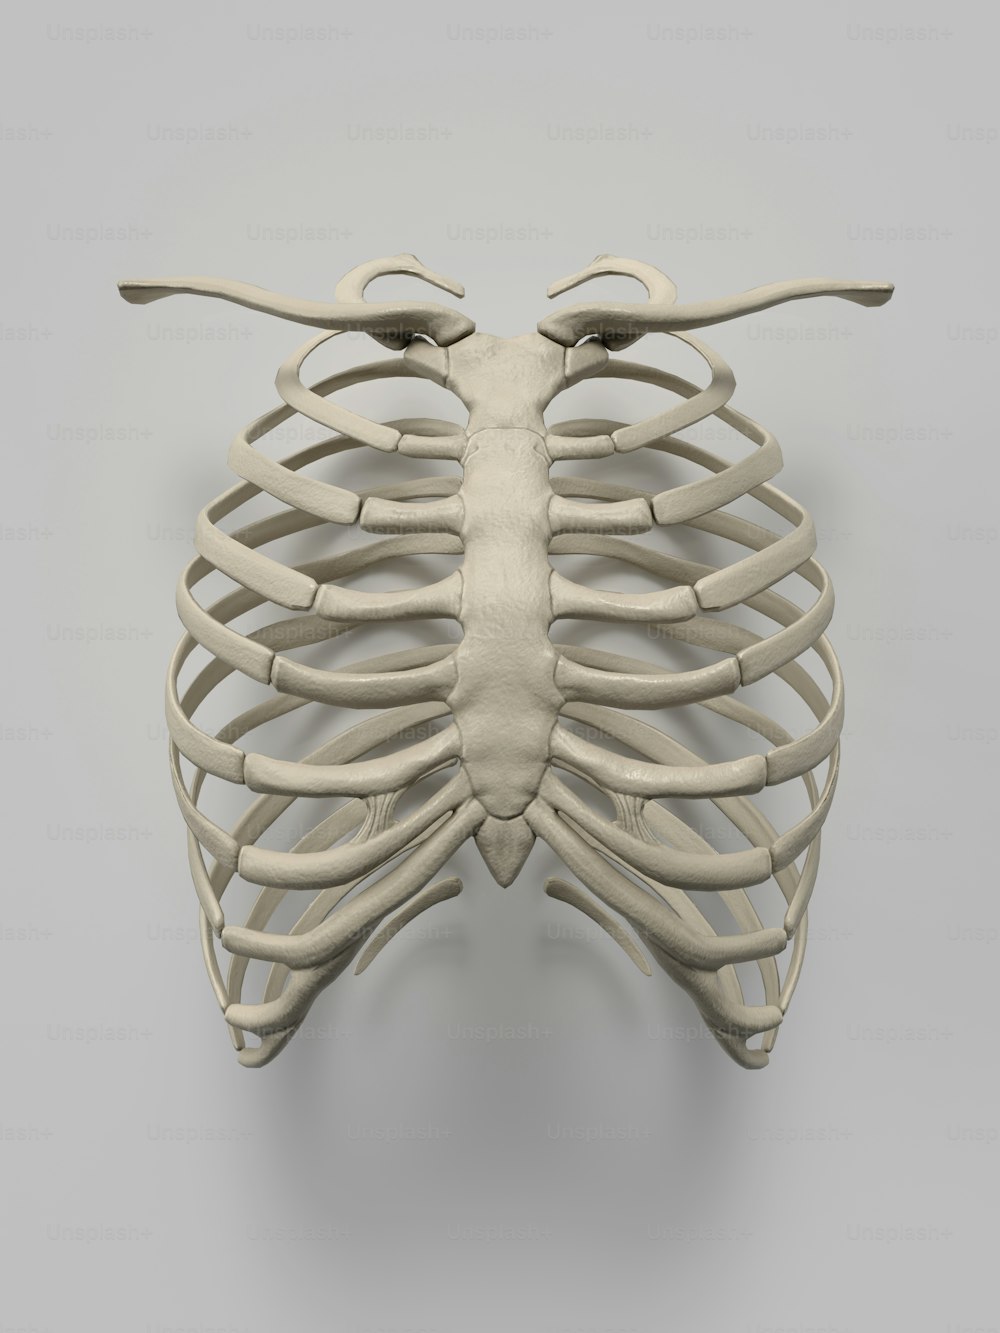 Un modèle 3D d’une cage thoracique humaine